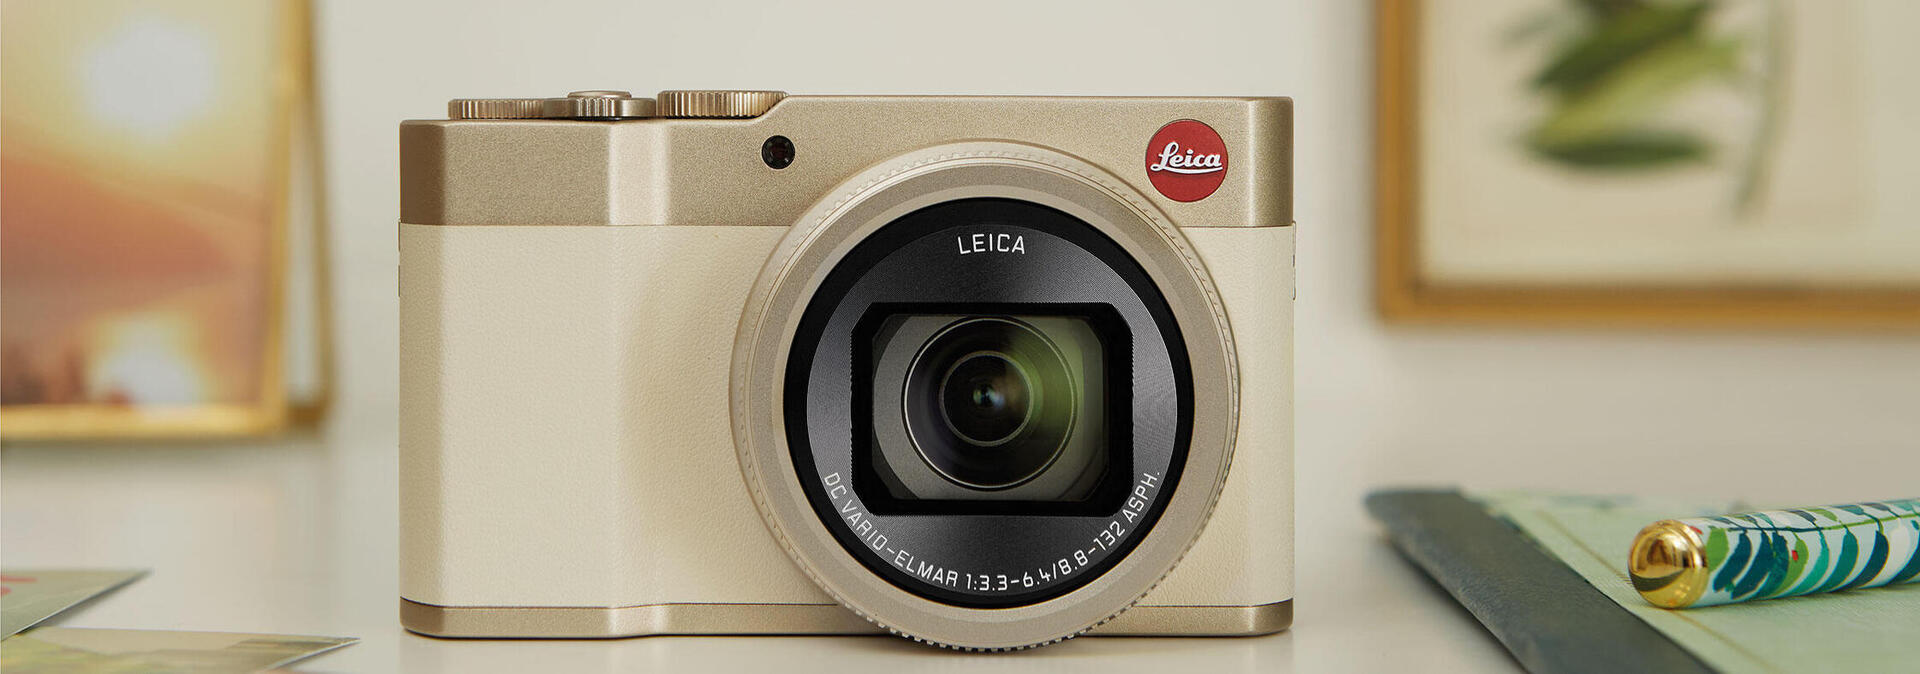 【即納安い】新品並 Leica ライカ C-LUX1 コンパクト デジタルカメラ シルバー その他